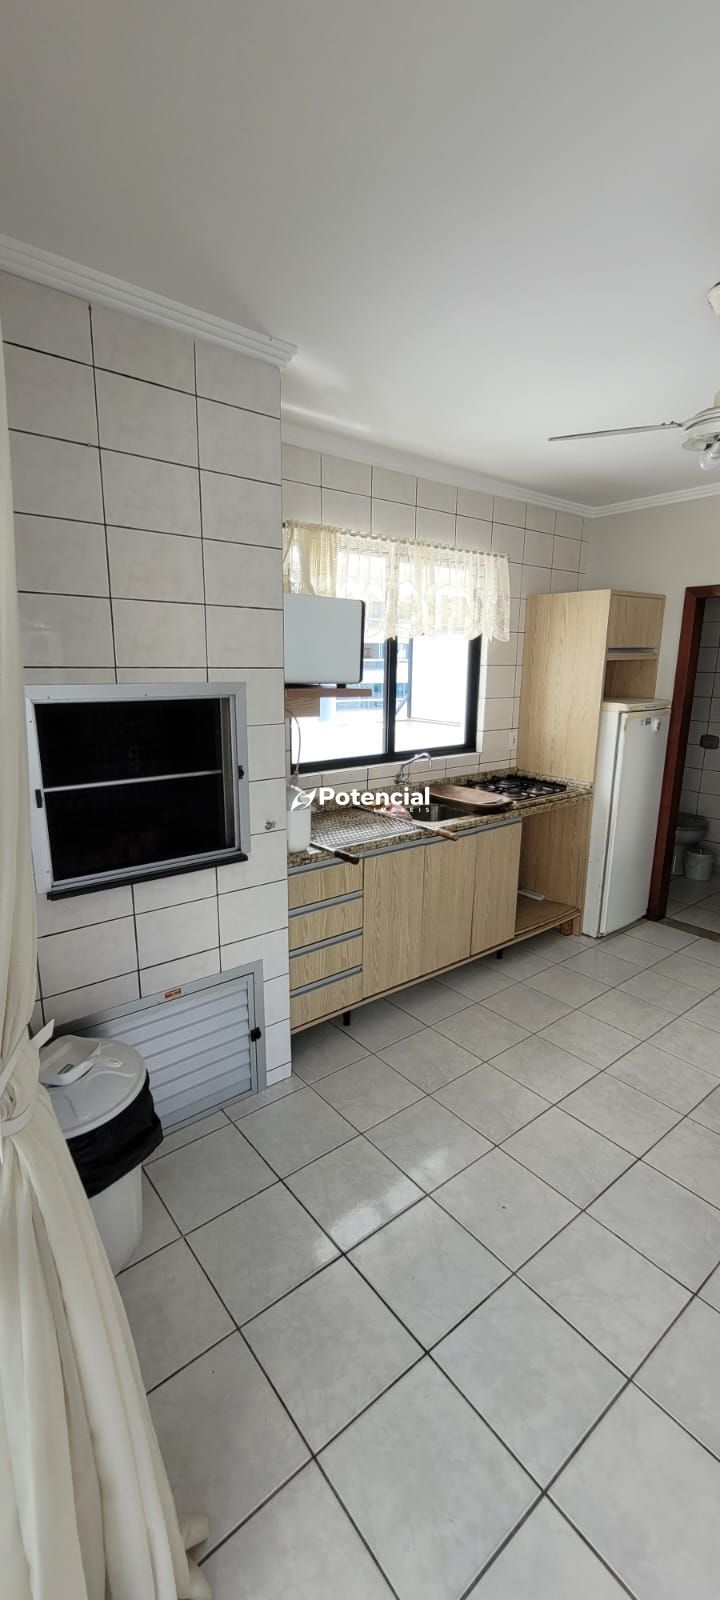 Imagem de Apartamento 3 Dormitórios sendo 1 Suíte | Meia Praia - Itapema | Potencial Imóveis.